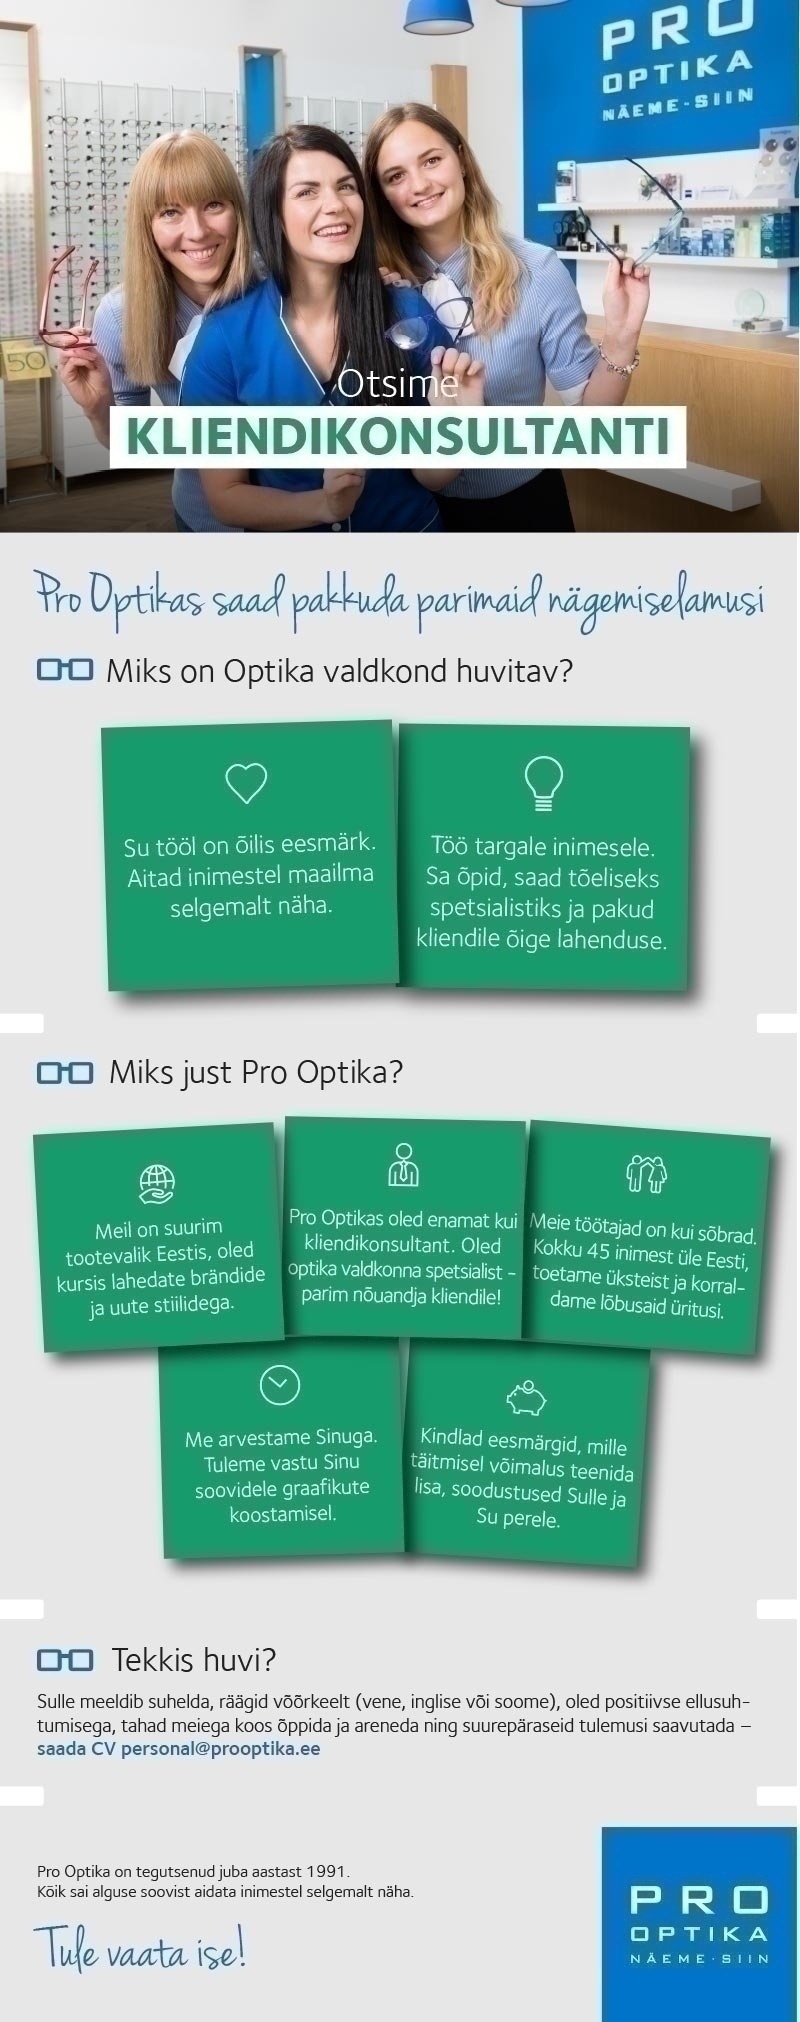 Pro Optika Kliendikonsultant Tallinna kesklinnas- saa koos meiega optika valdkonna spetsialistiks!